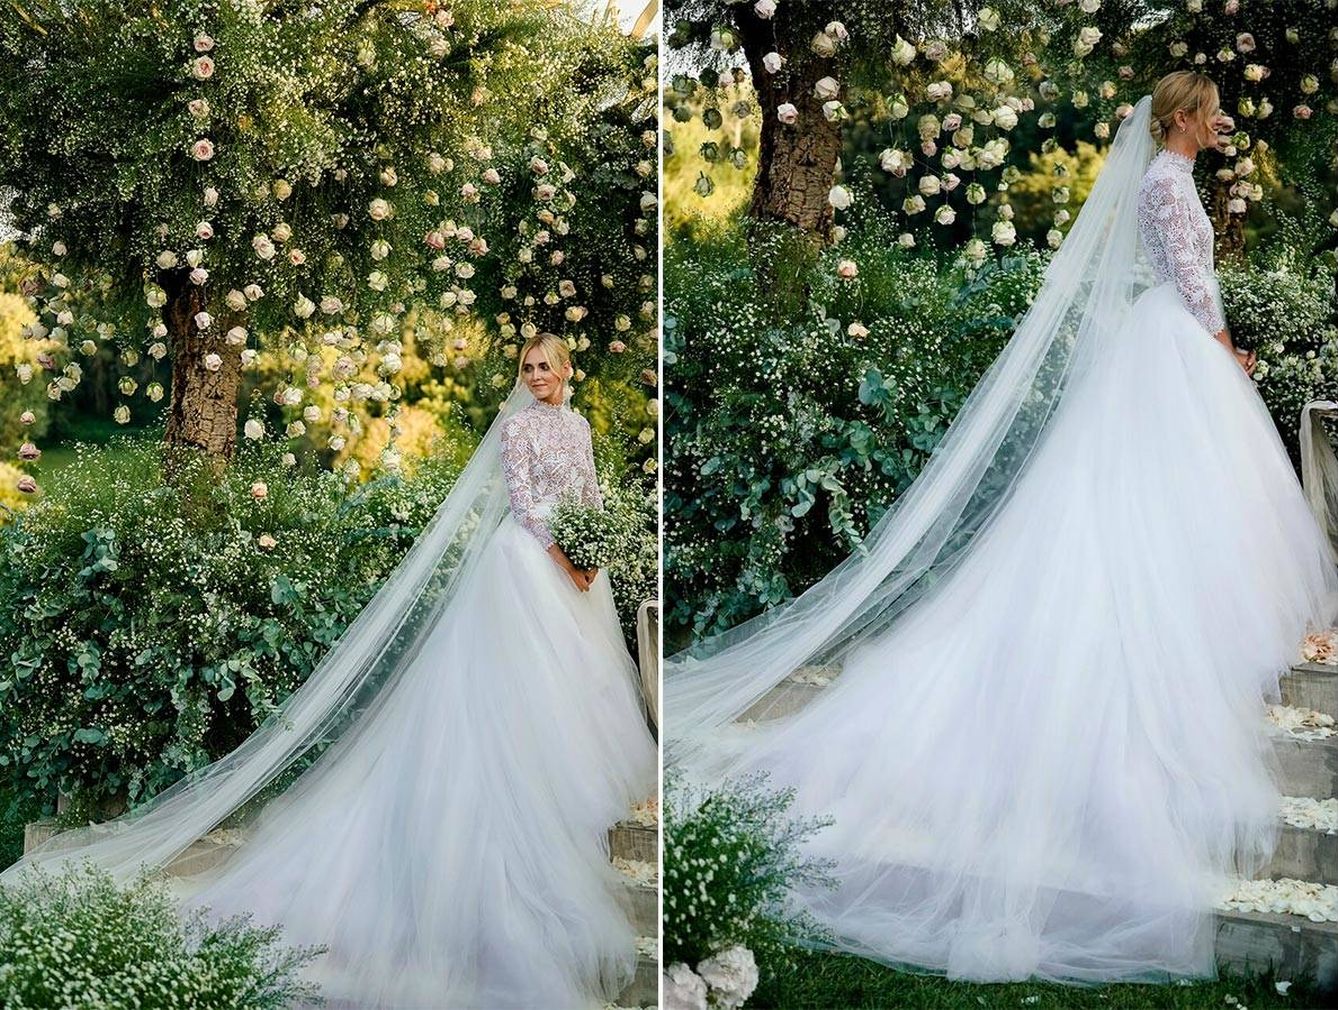 La novia en uno de los espectaculares jardines de Dimora delle Balze. (Imagen: David Bastianoni/Cortesía de Dior)